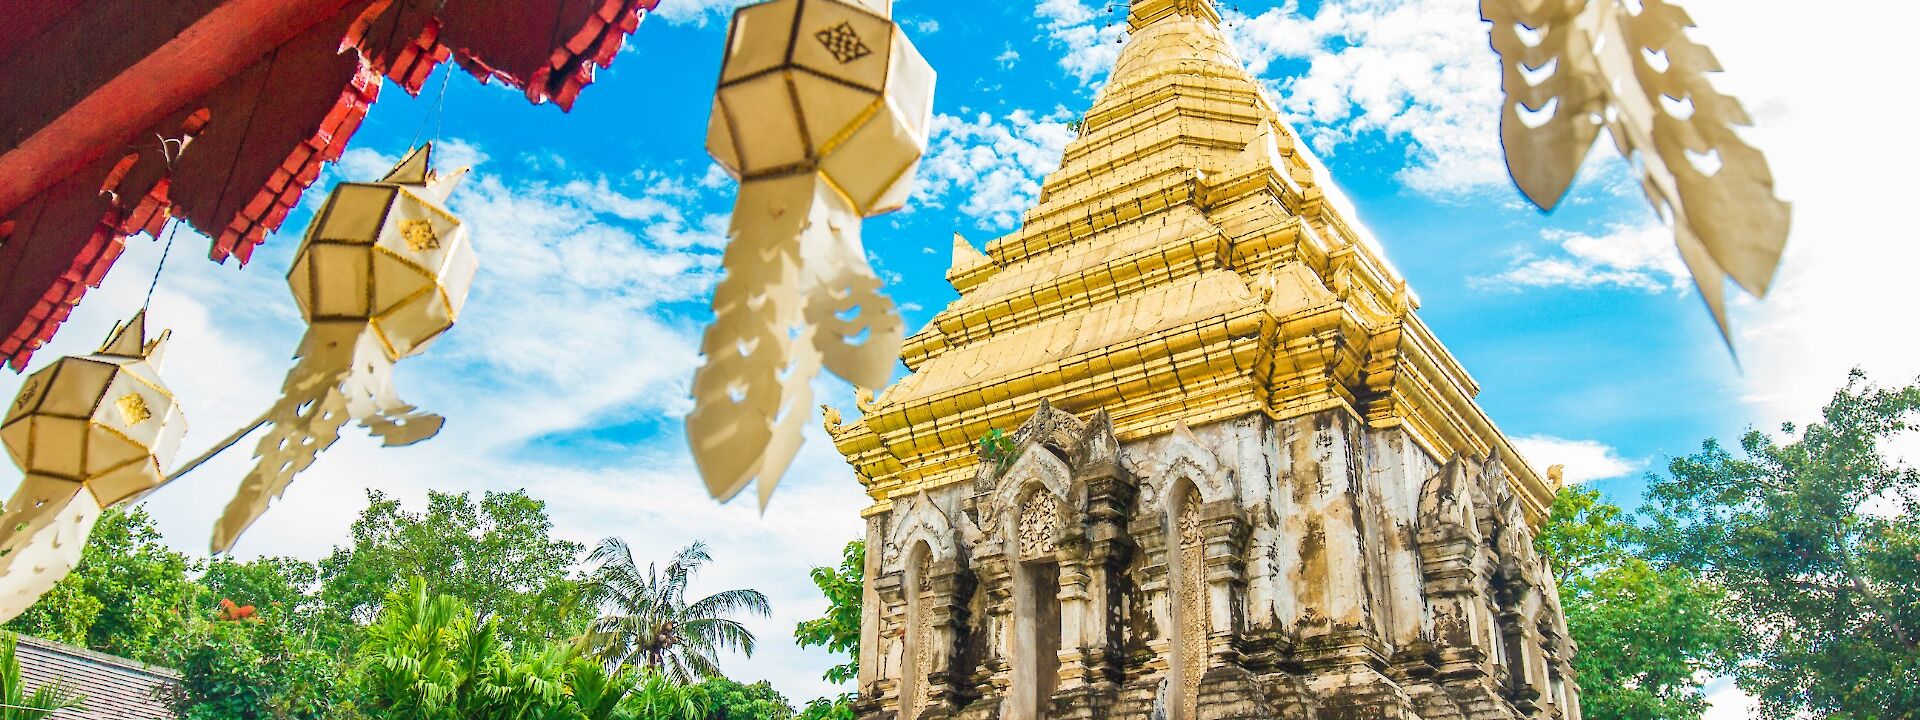 Gold Pagoda in Chiang Mai, Thailand. Unsplash: Cheese Yang